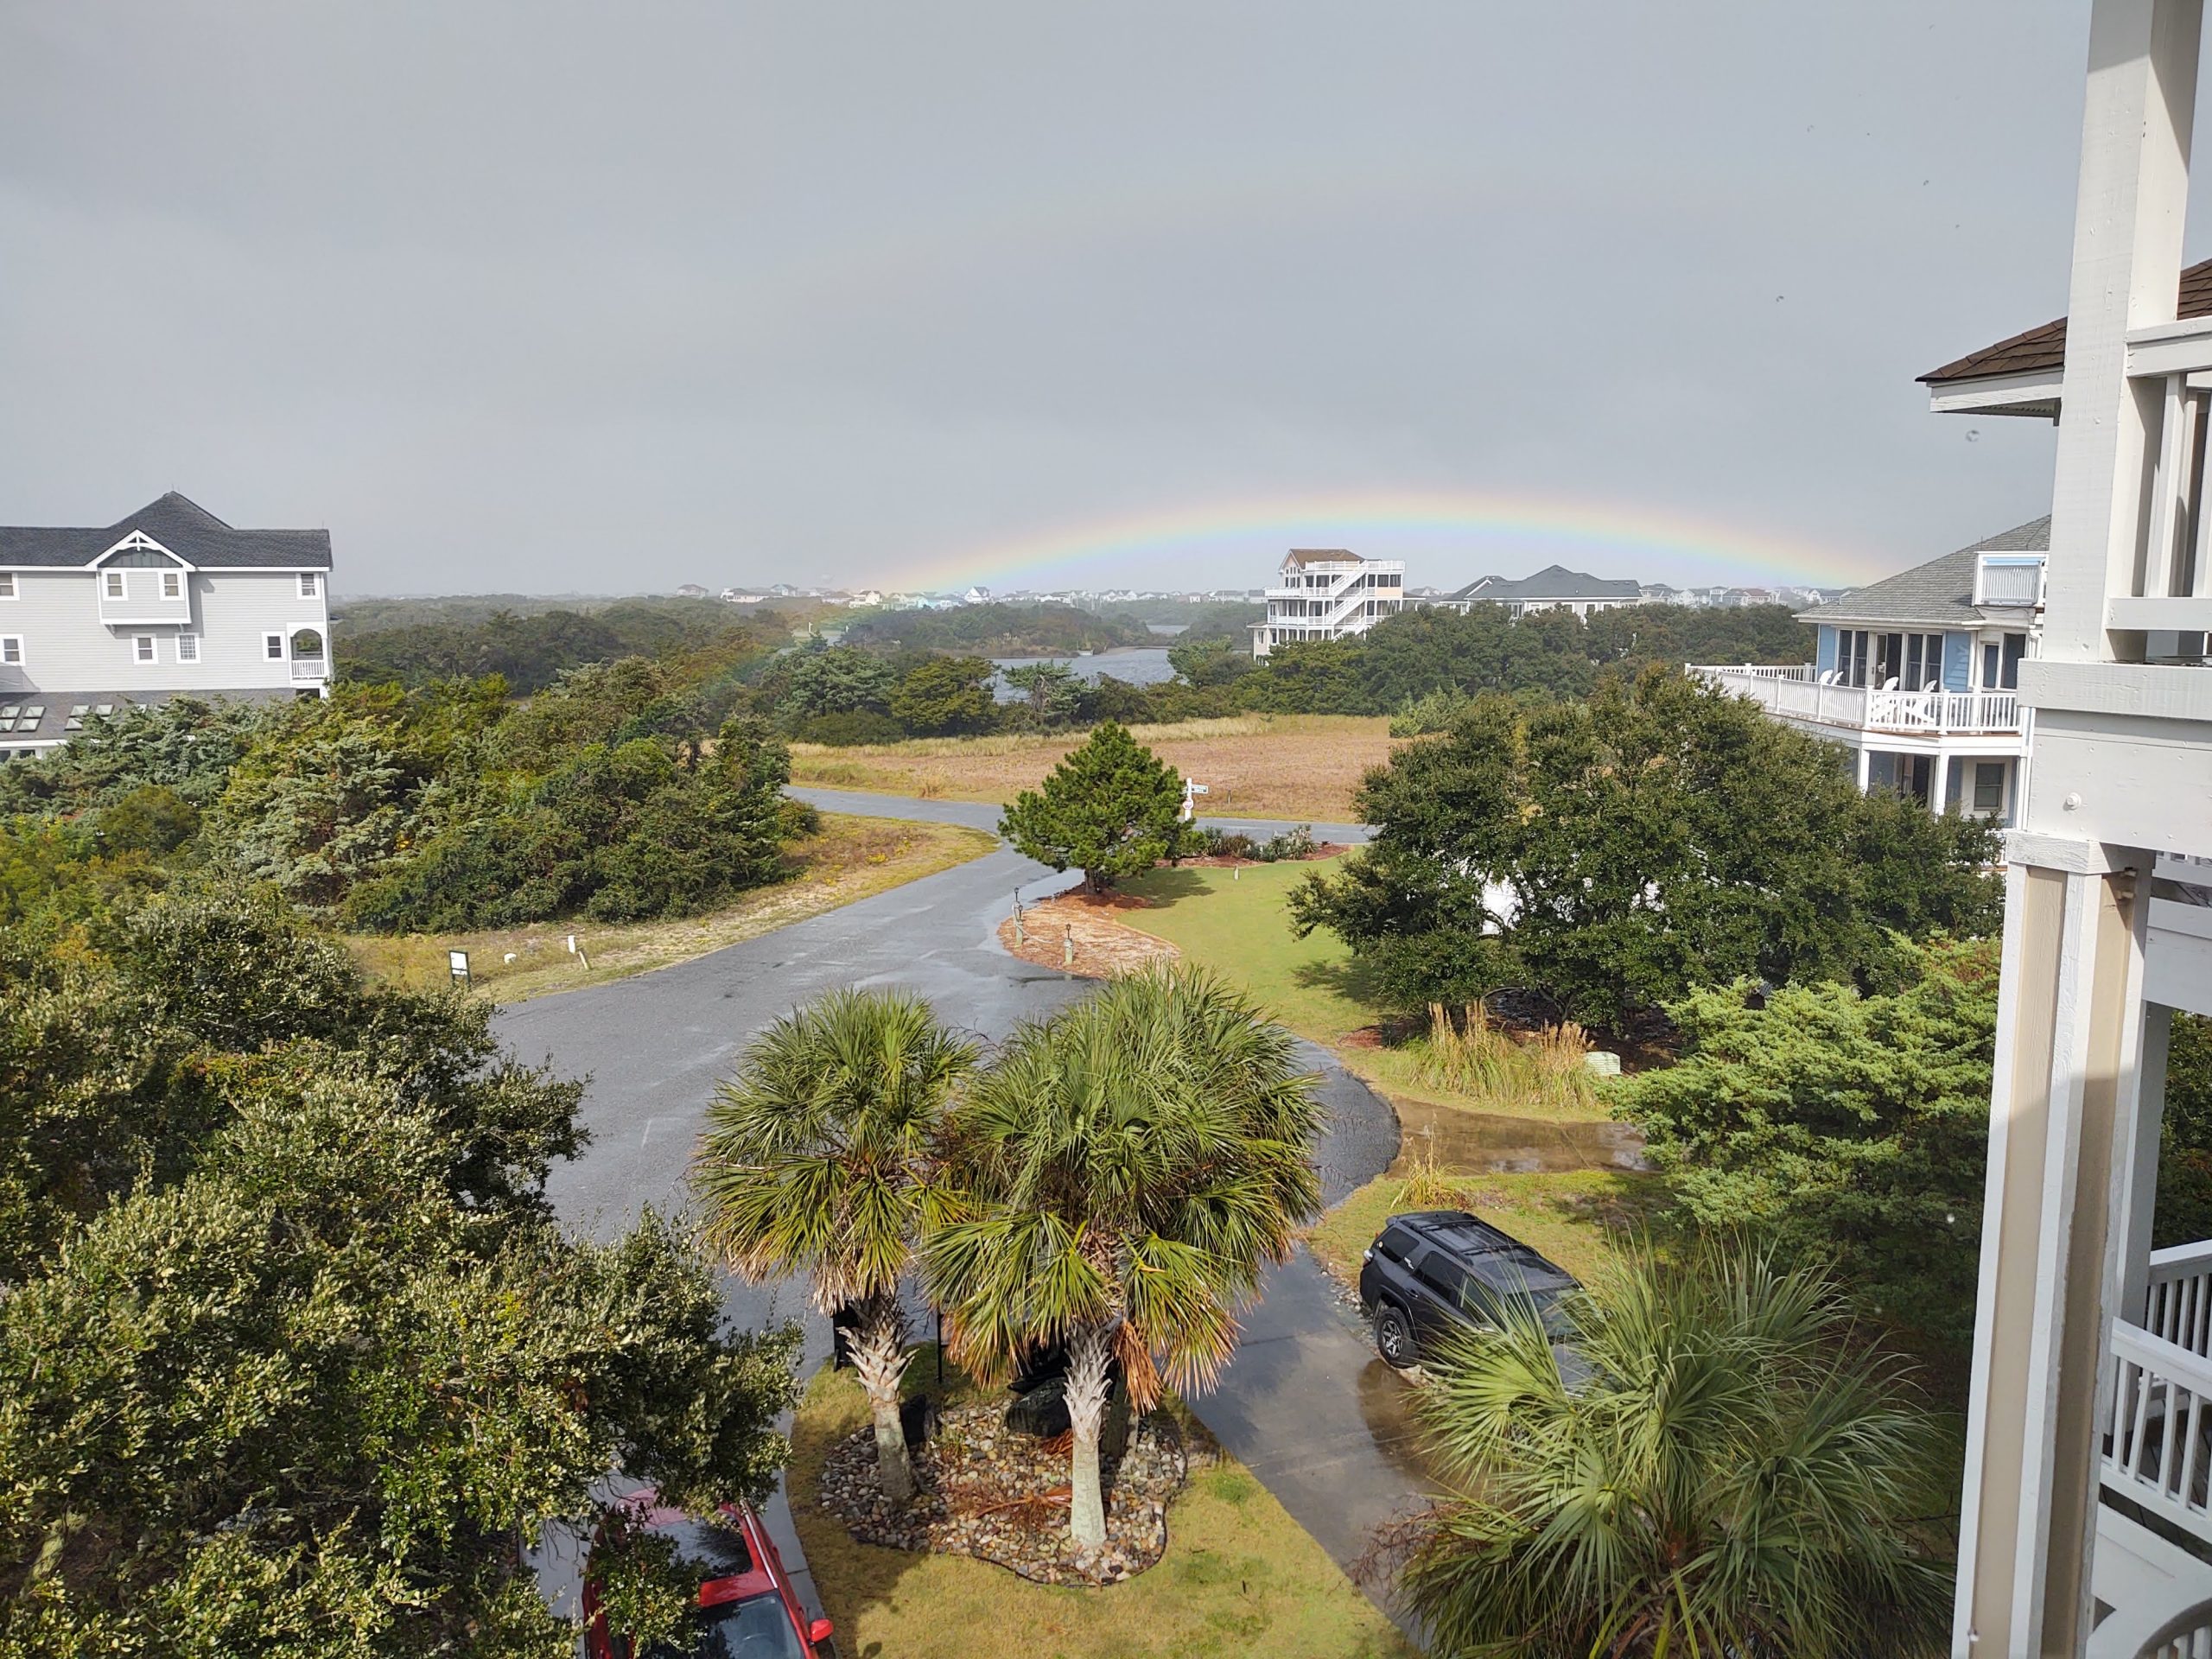 Image: Rainbow on Hatteras Island